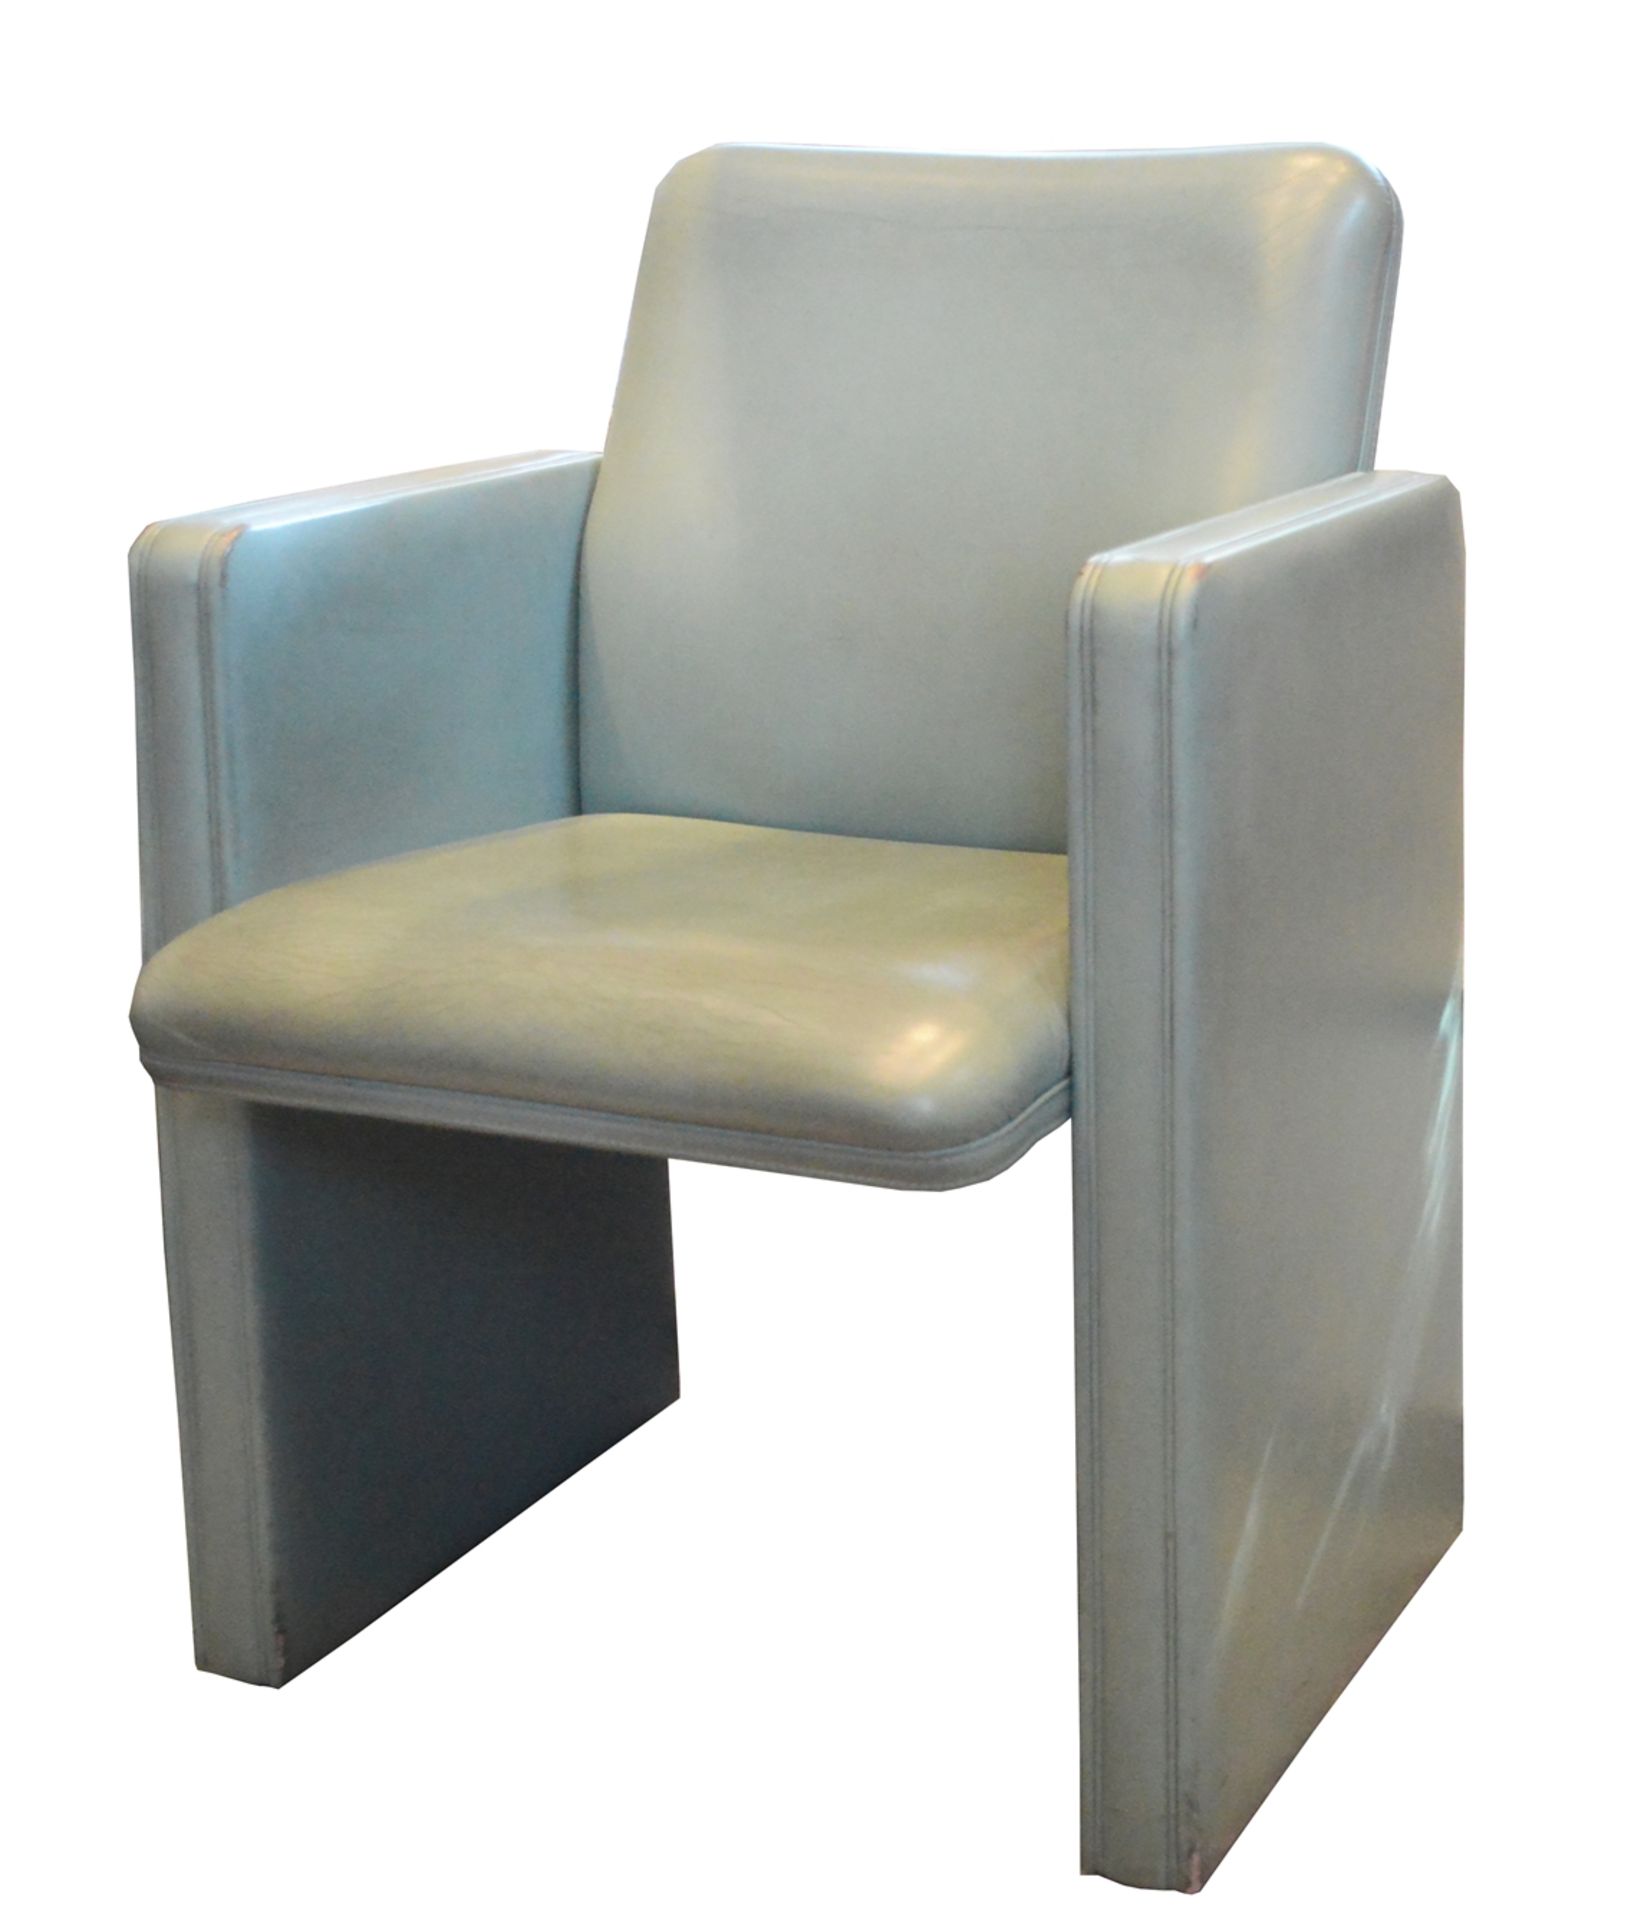 Zwei Sessel, Poltrona Frau, Tito Agnoli, graugrün, 83x60x53cm, Sitzhöhe 47cmTwo armchairs, - Bild 2 aus 4